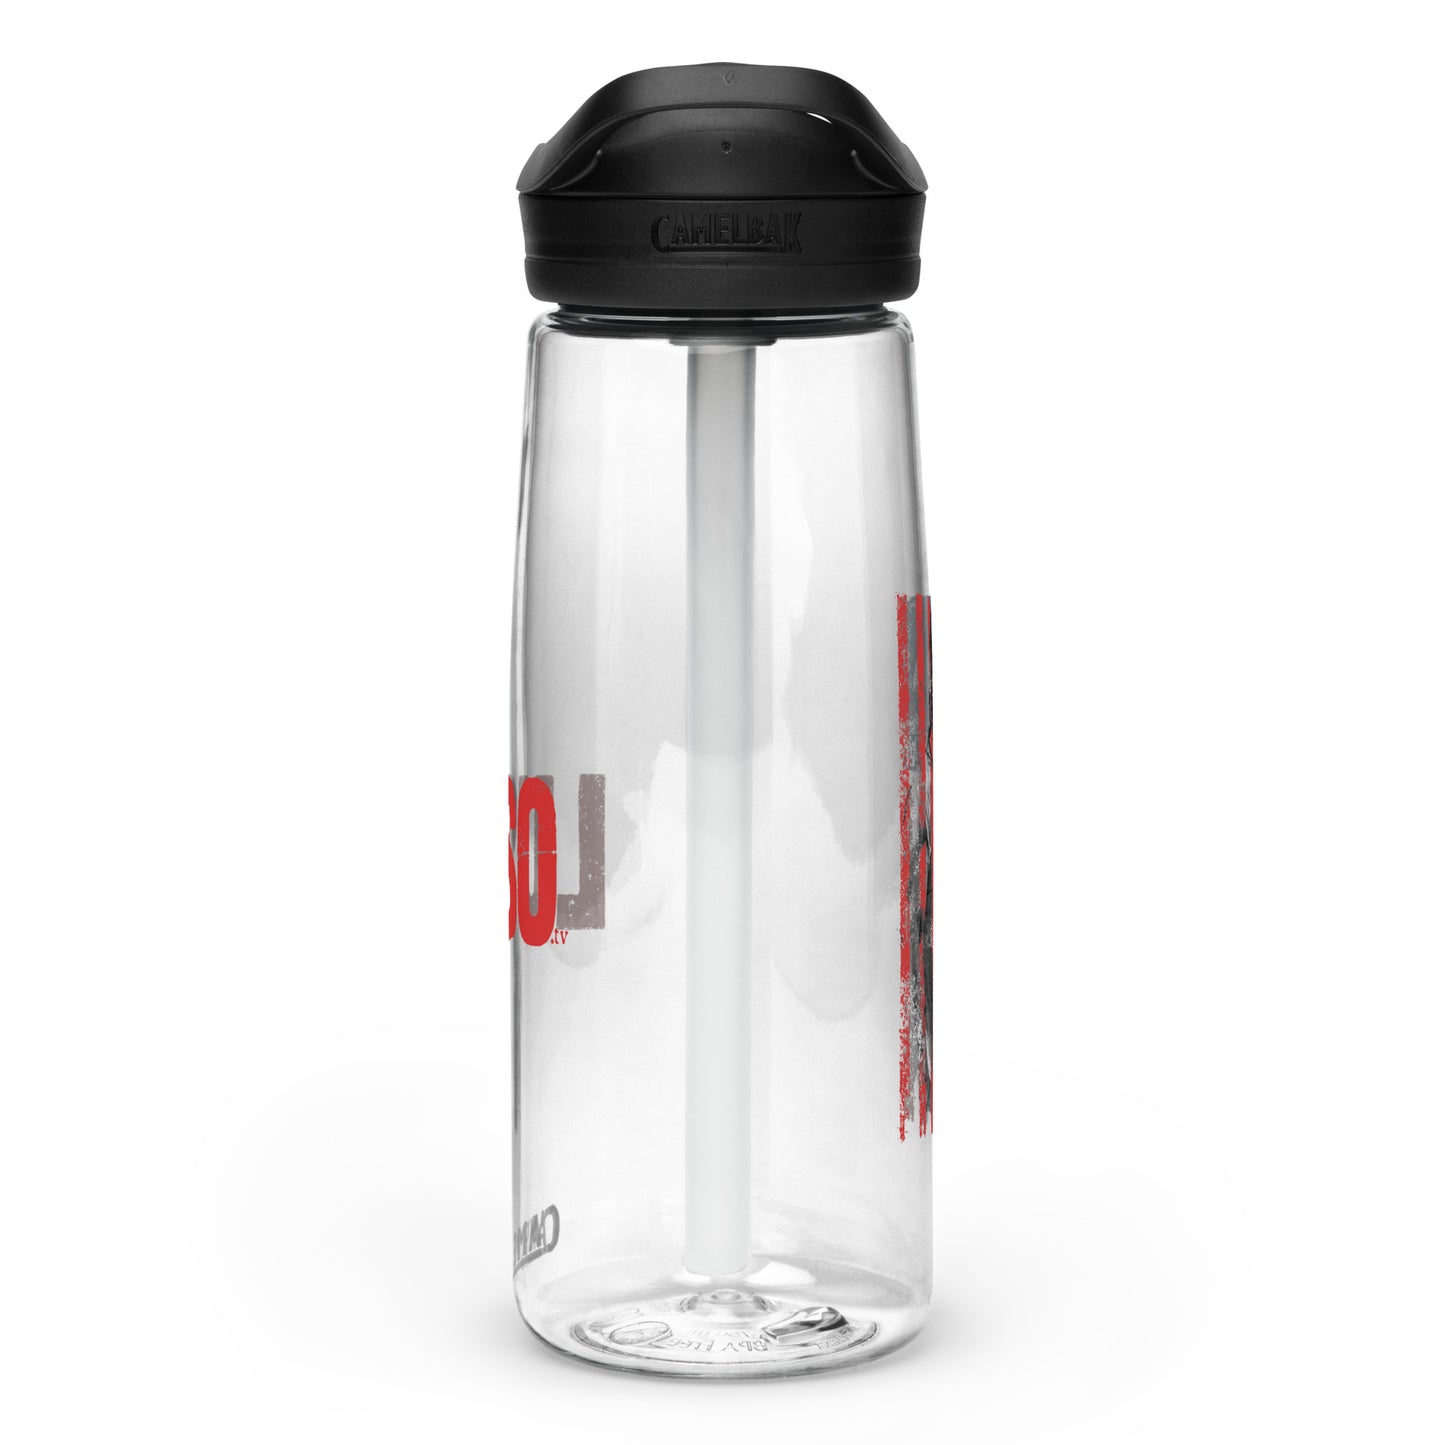 LUSO Sports water bottle